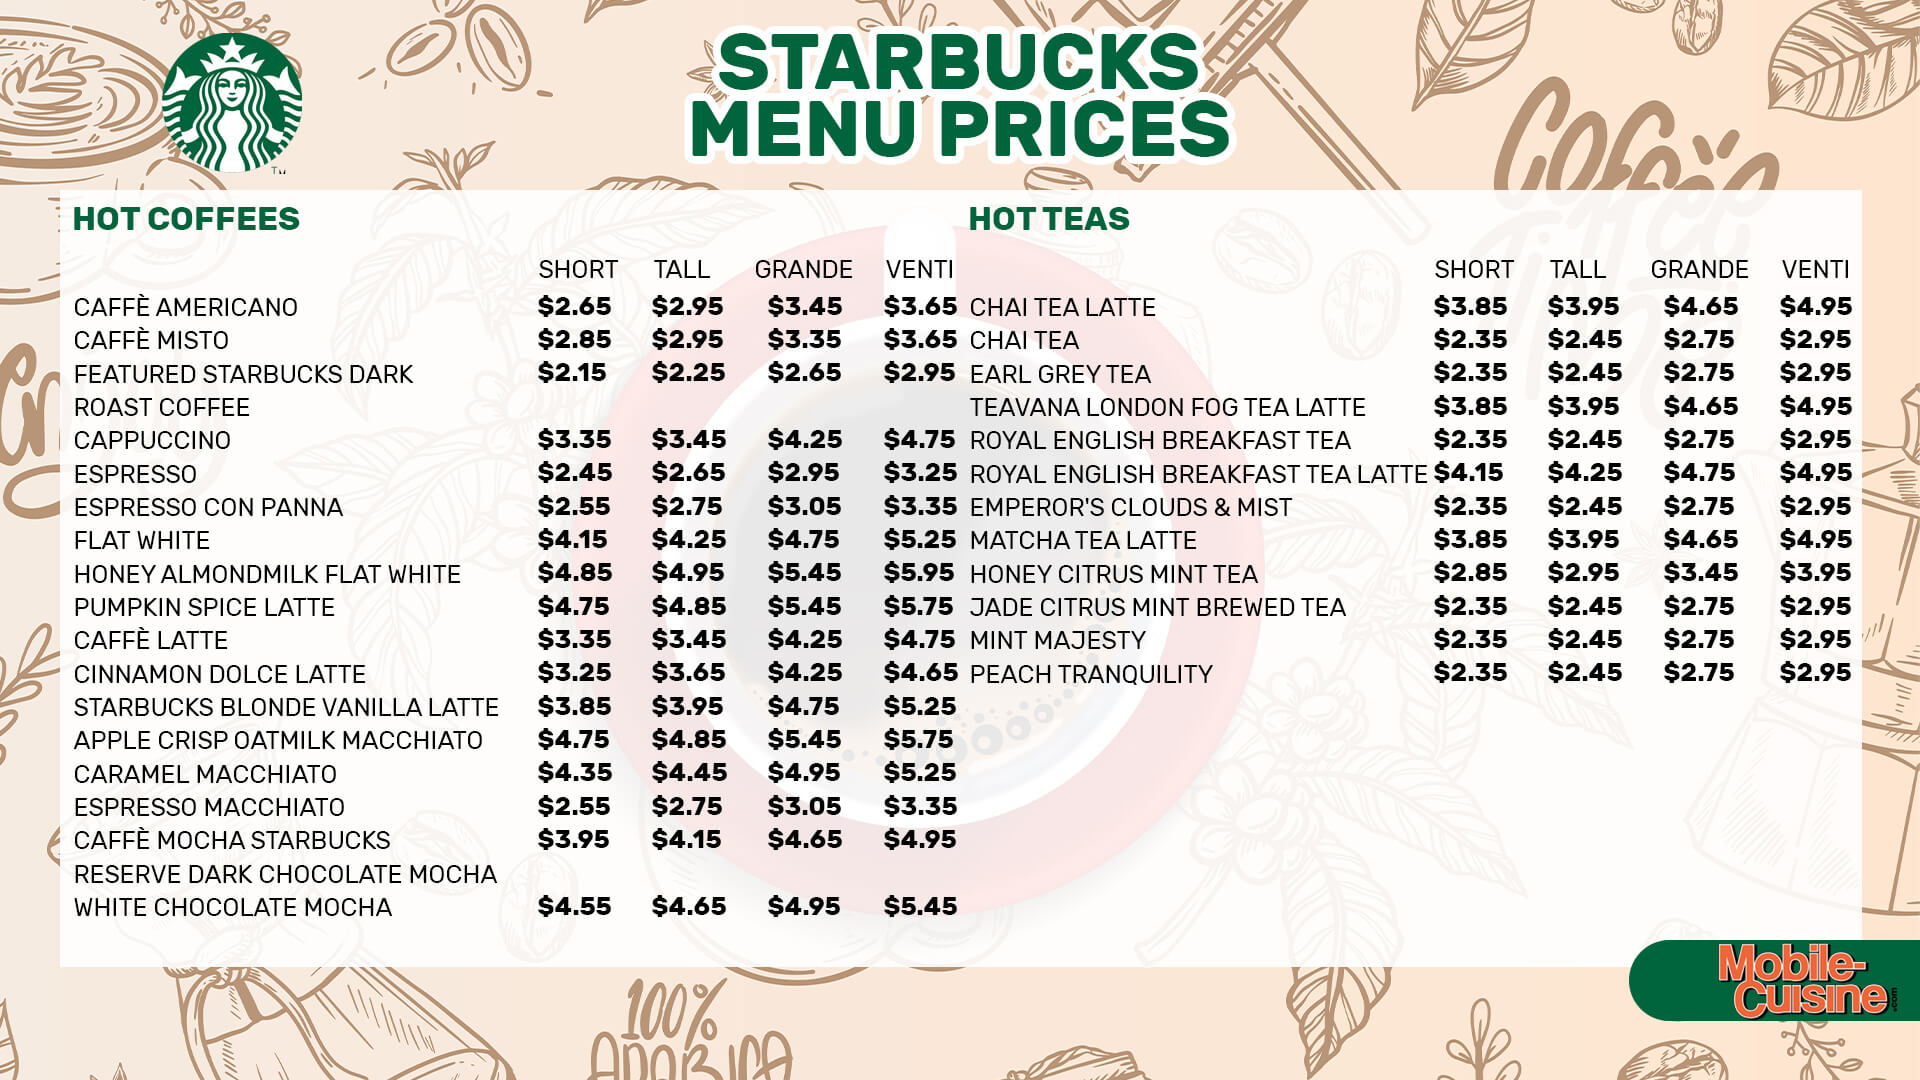 Starbucks menu prices